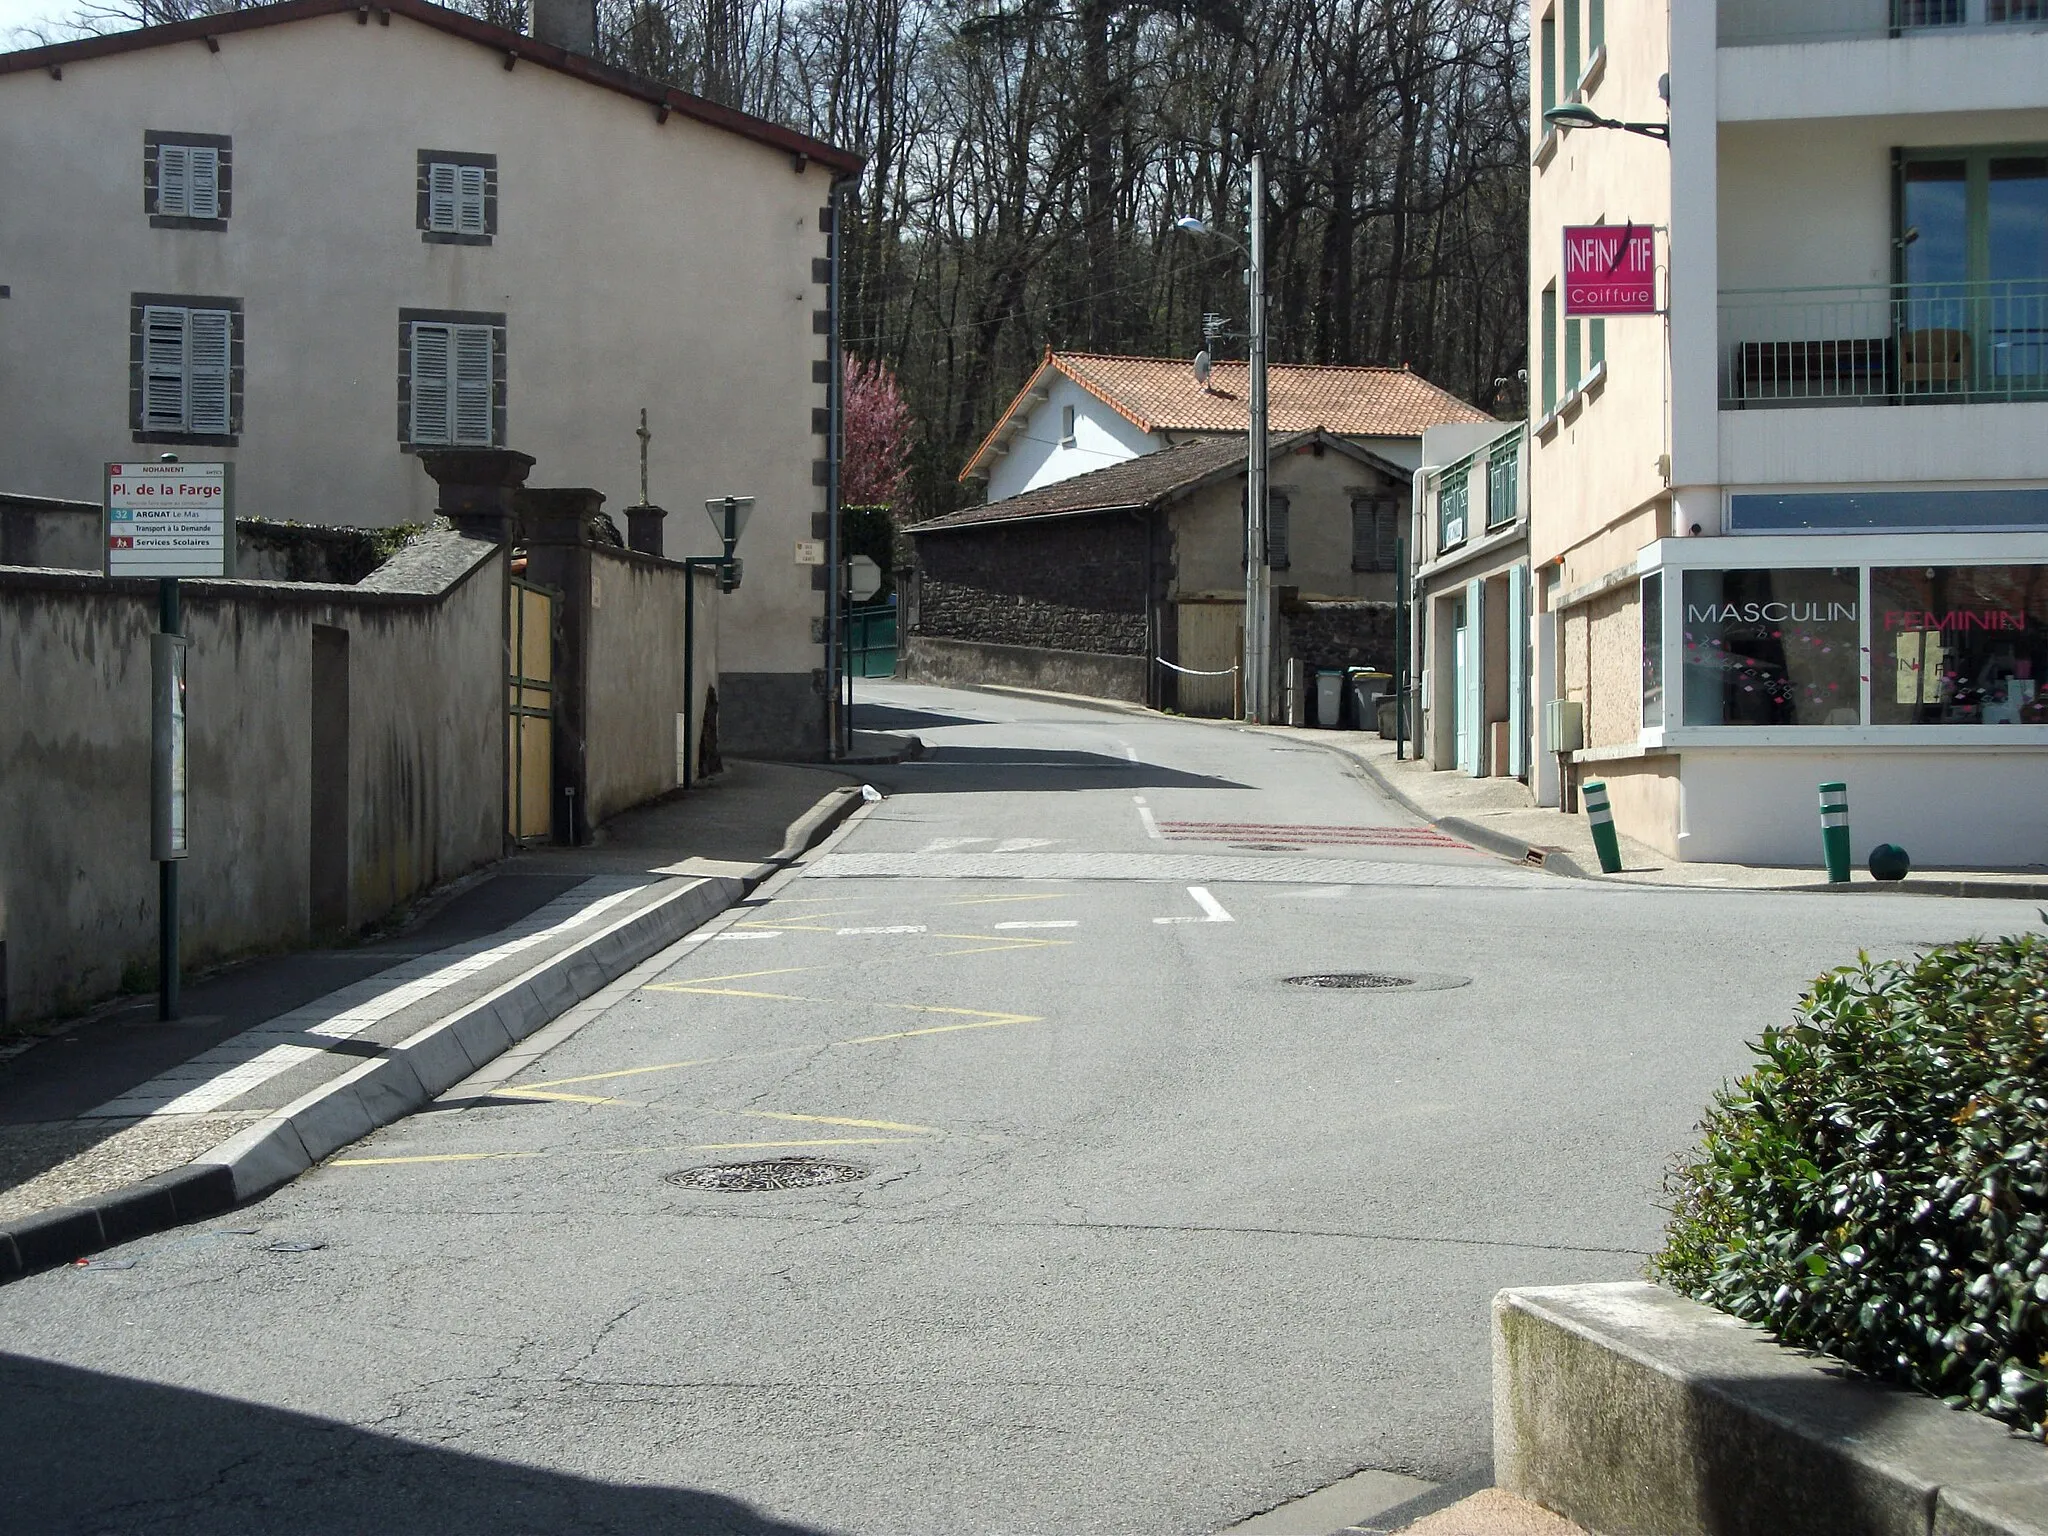 Obrázek Auvergne